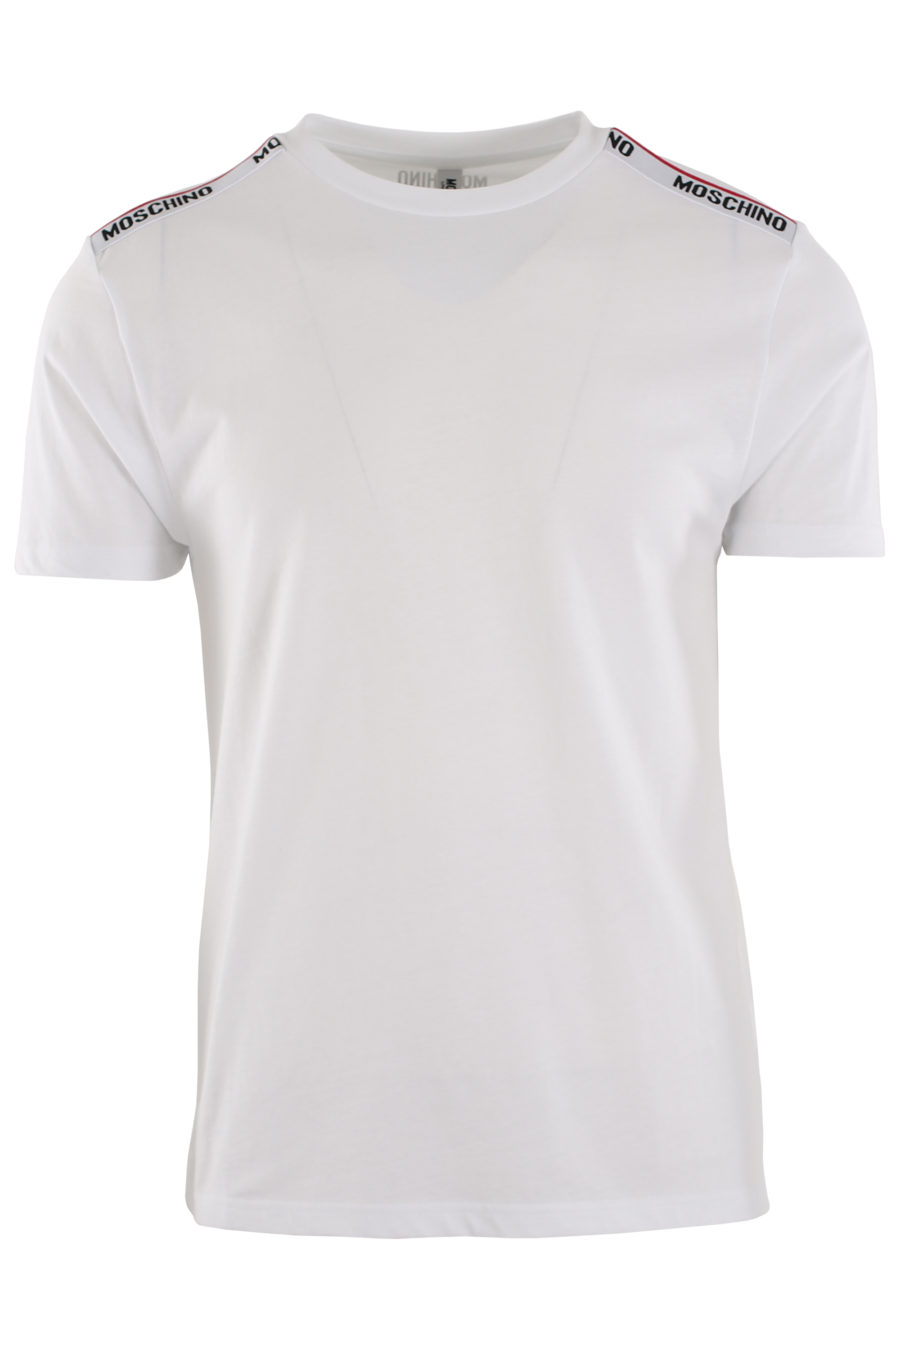 Camiseta blanca con logo en cinta en hombros - IMG 0391